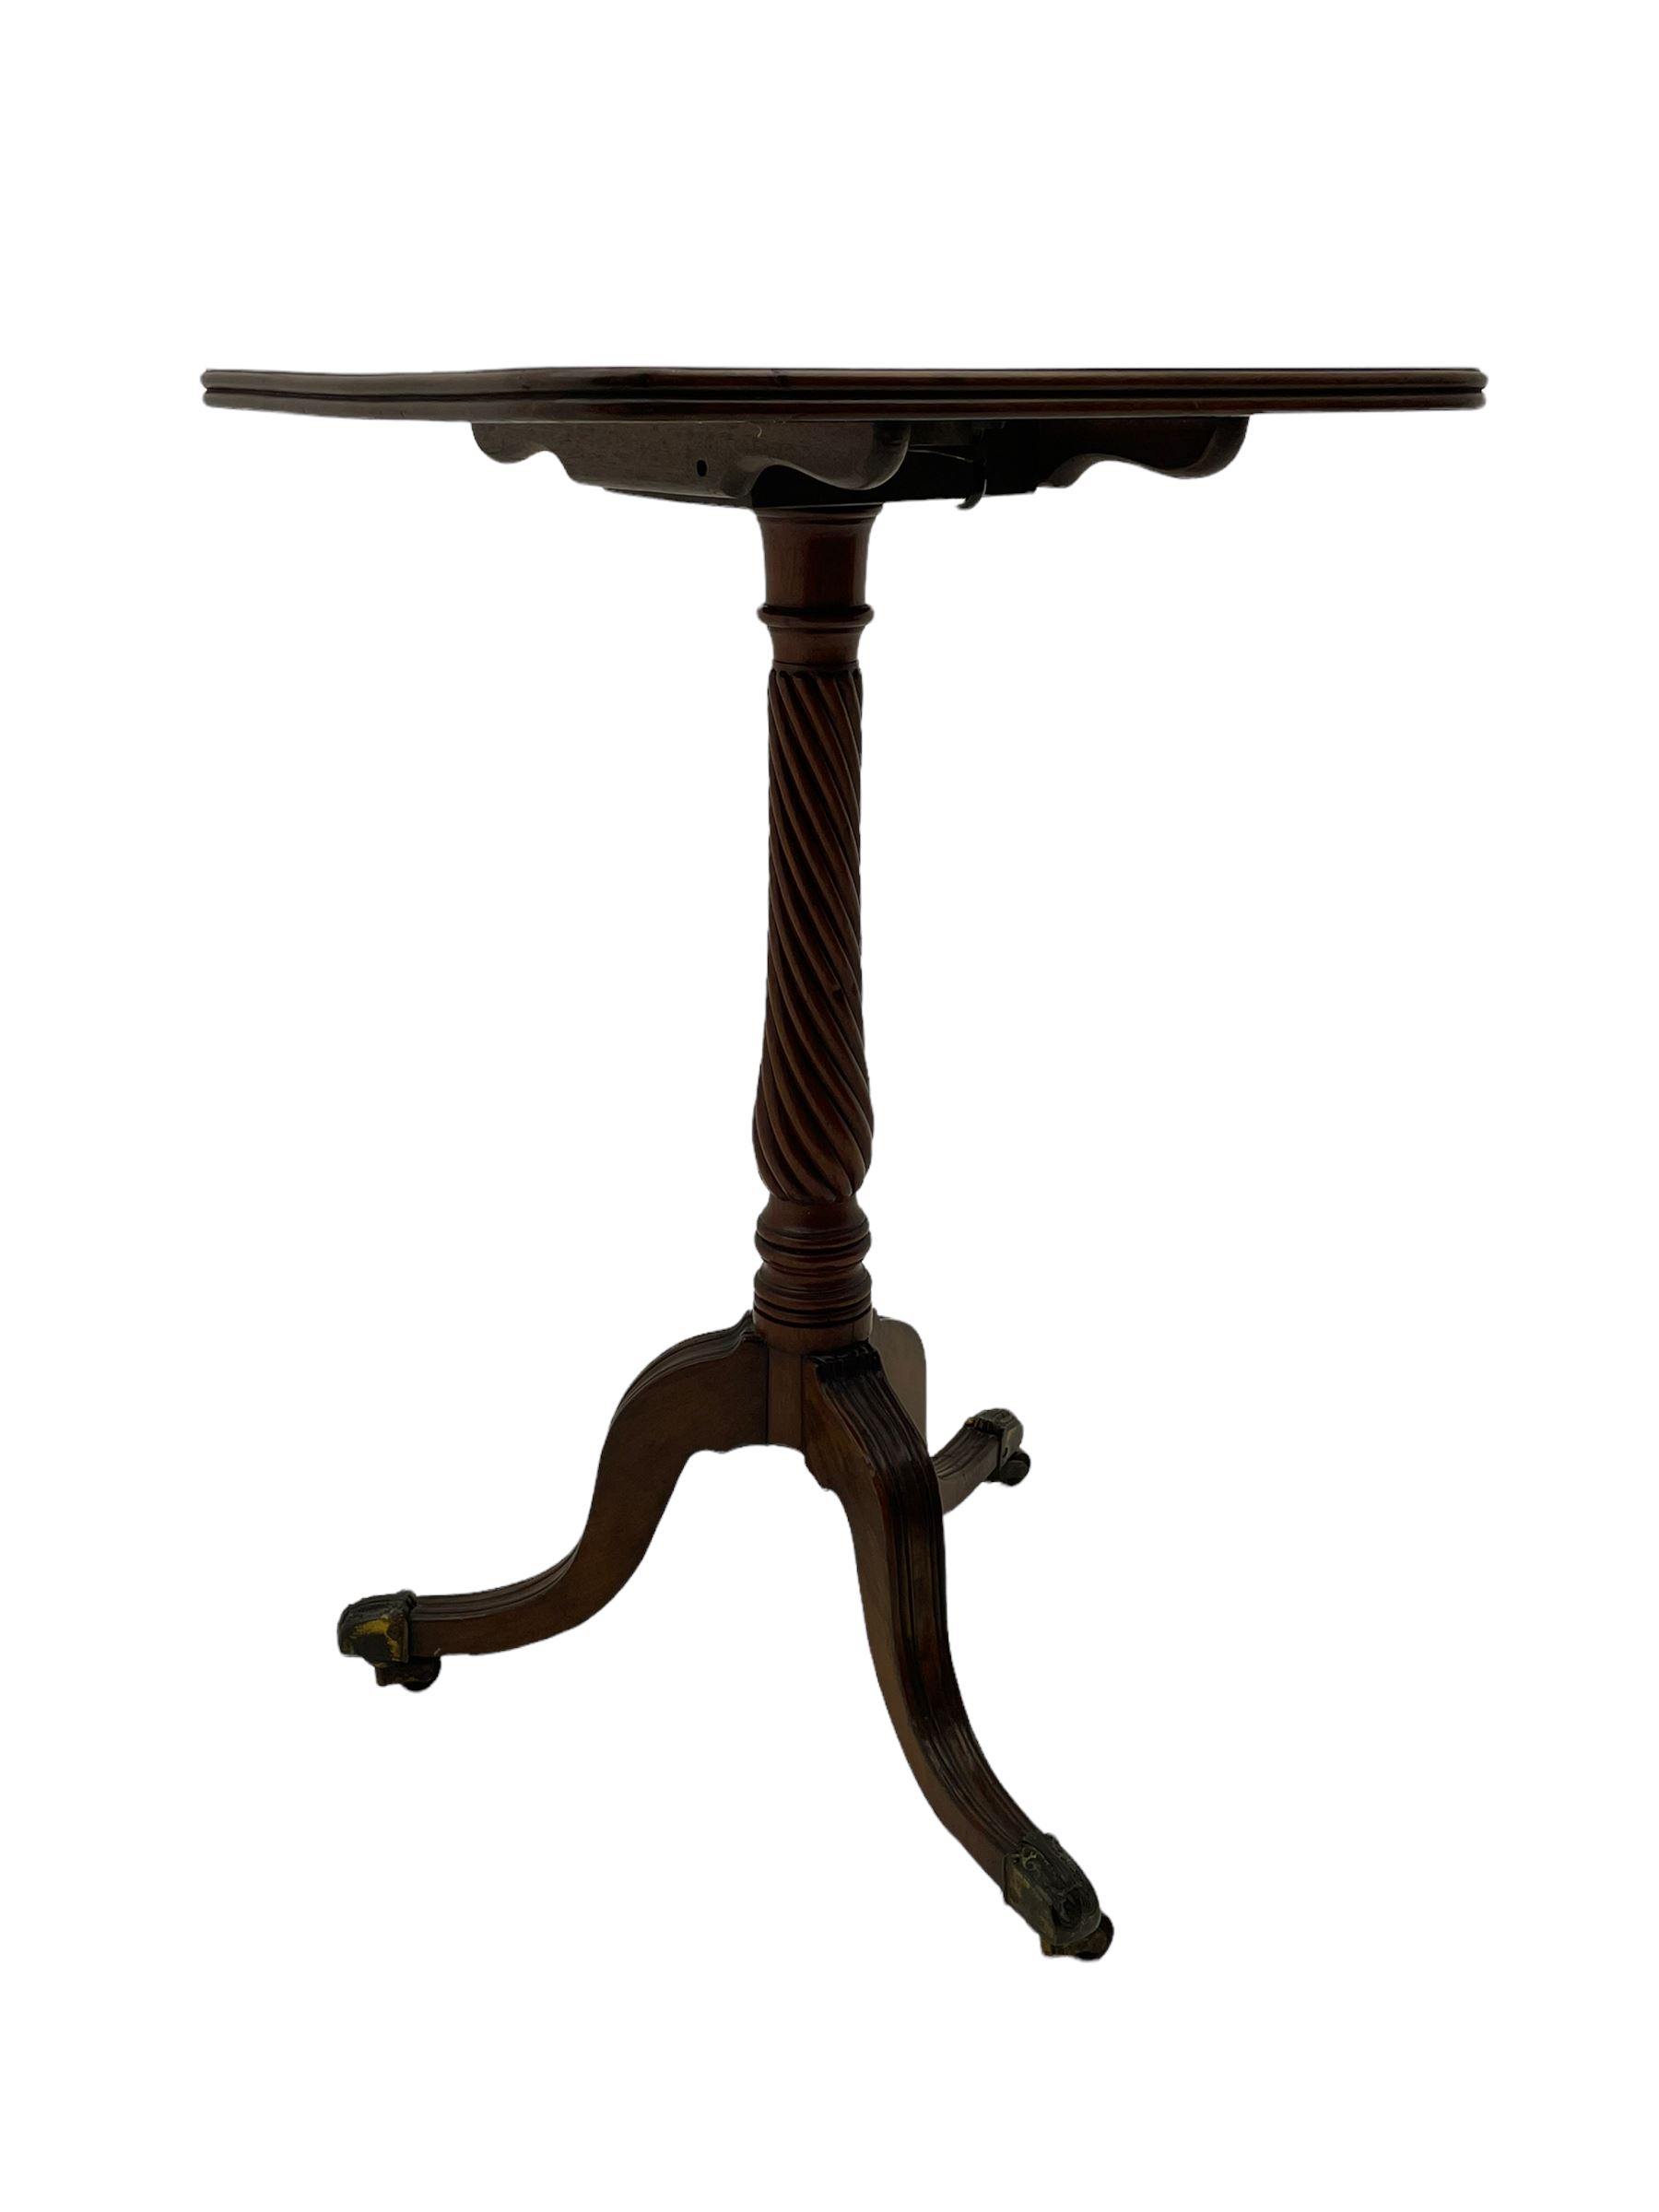 Regency mahogany tripod wine table - Image 3 of 10